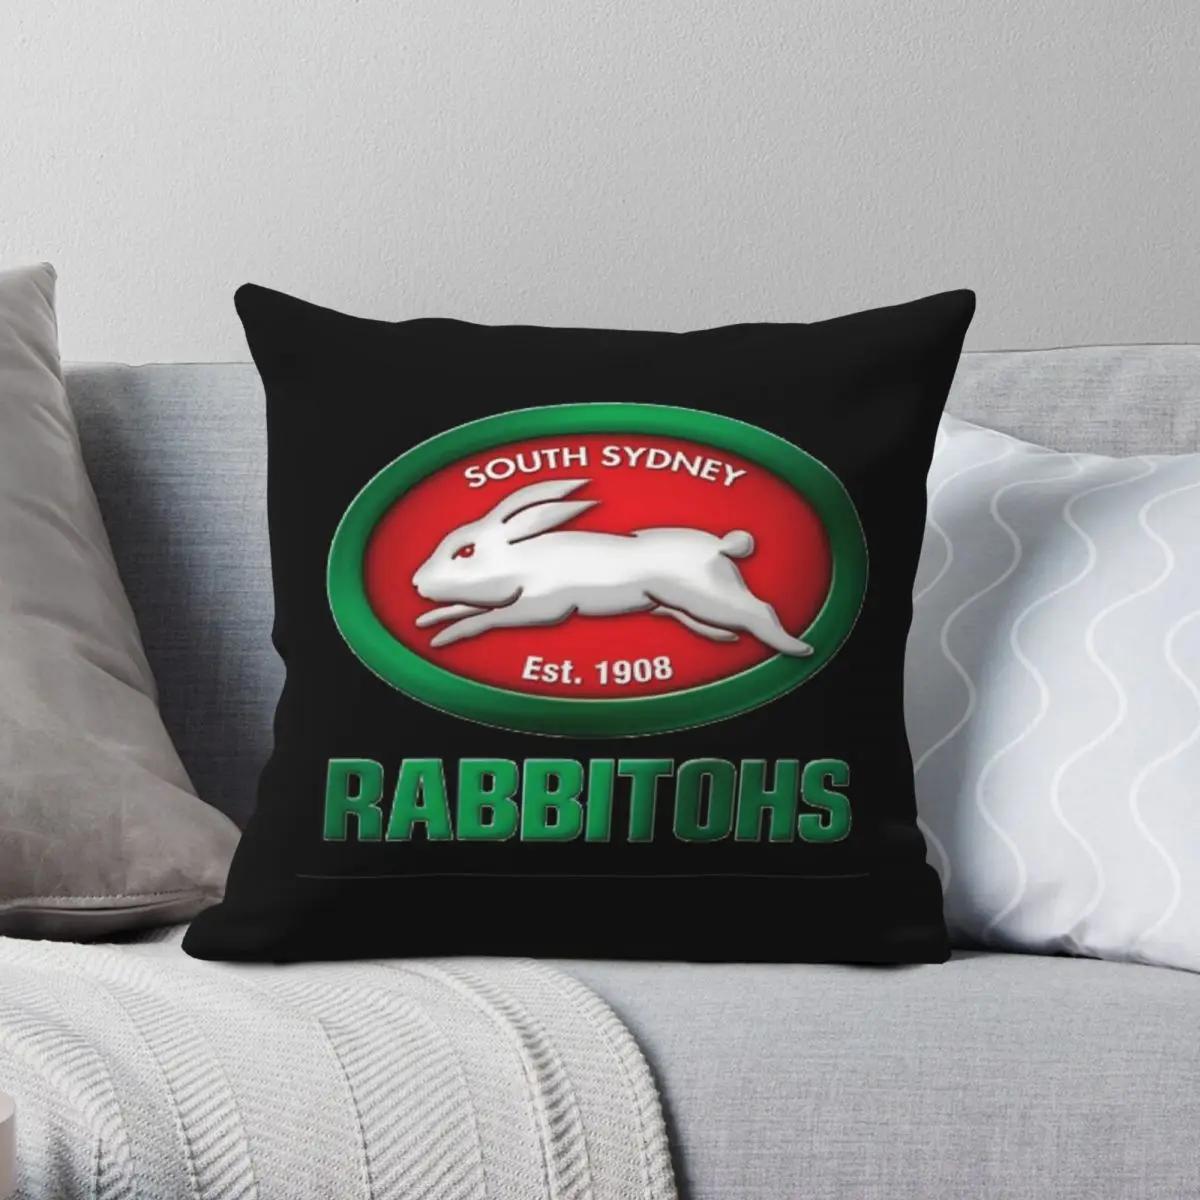 콺 õ Rabbithos   Ŀ     μ    Ŀ  ν  Ŀ